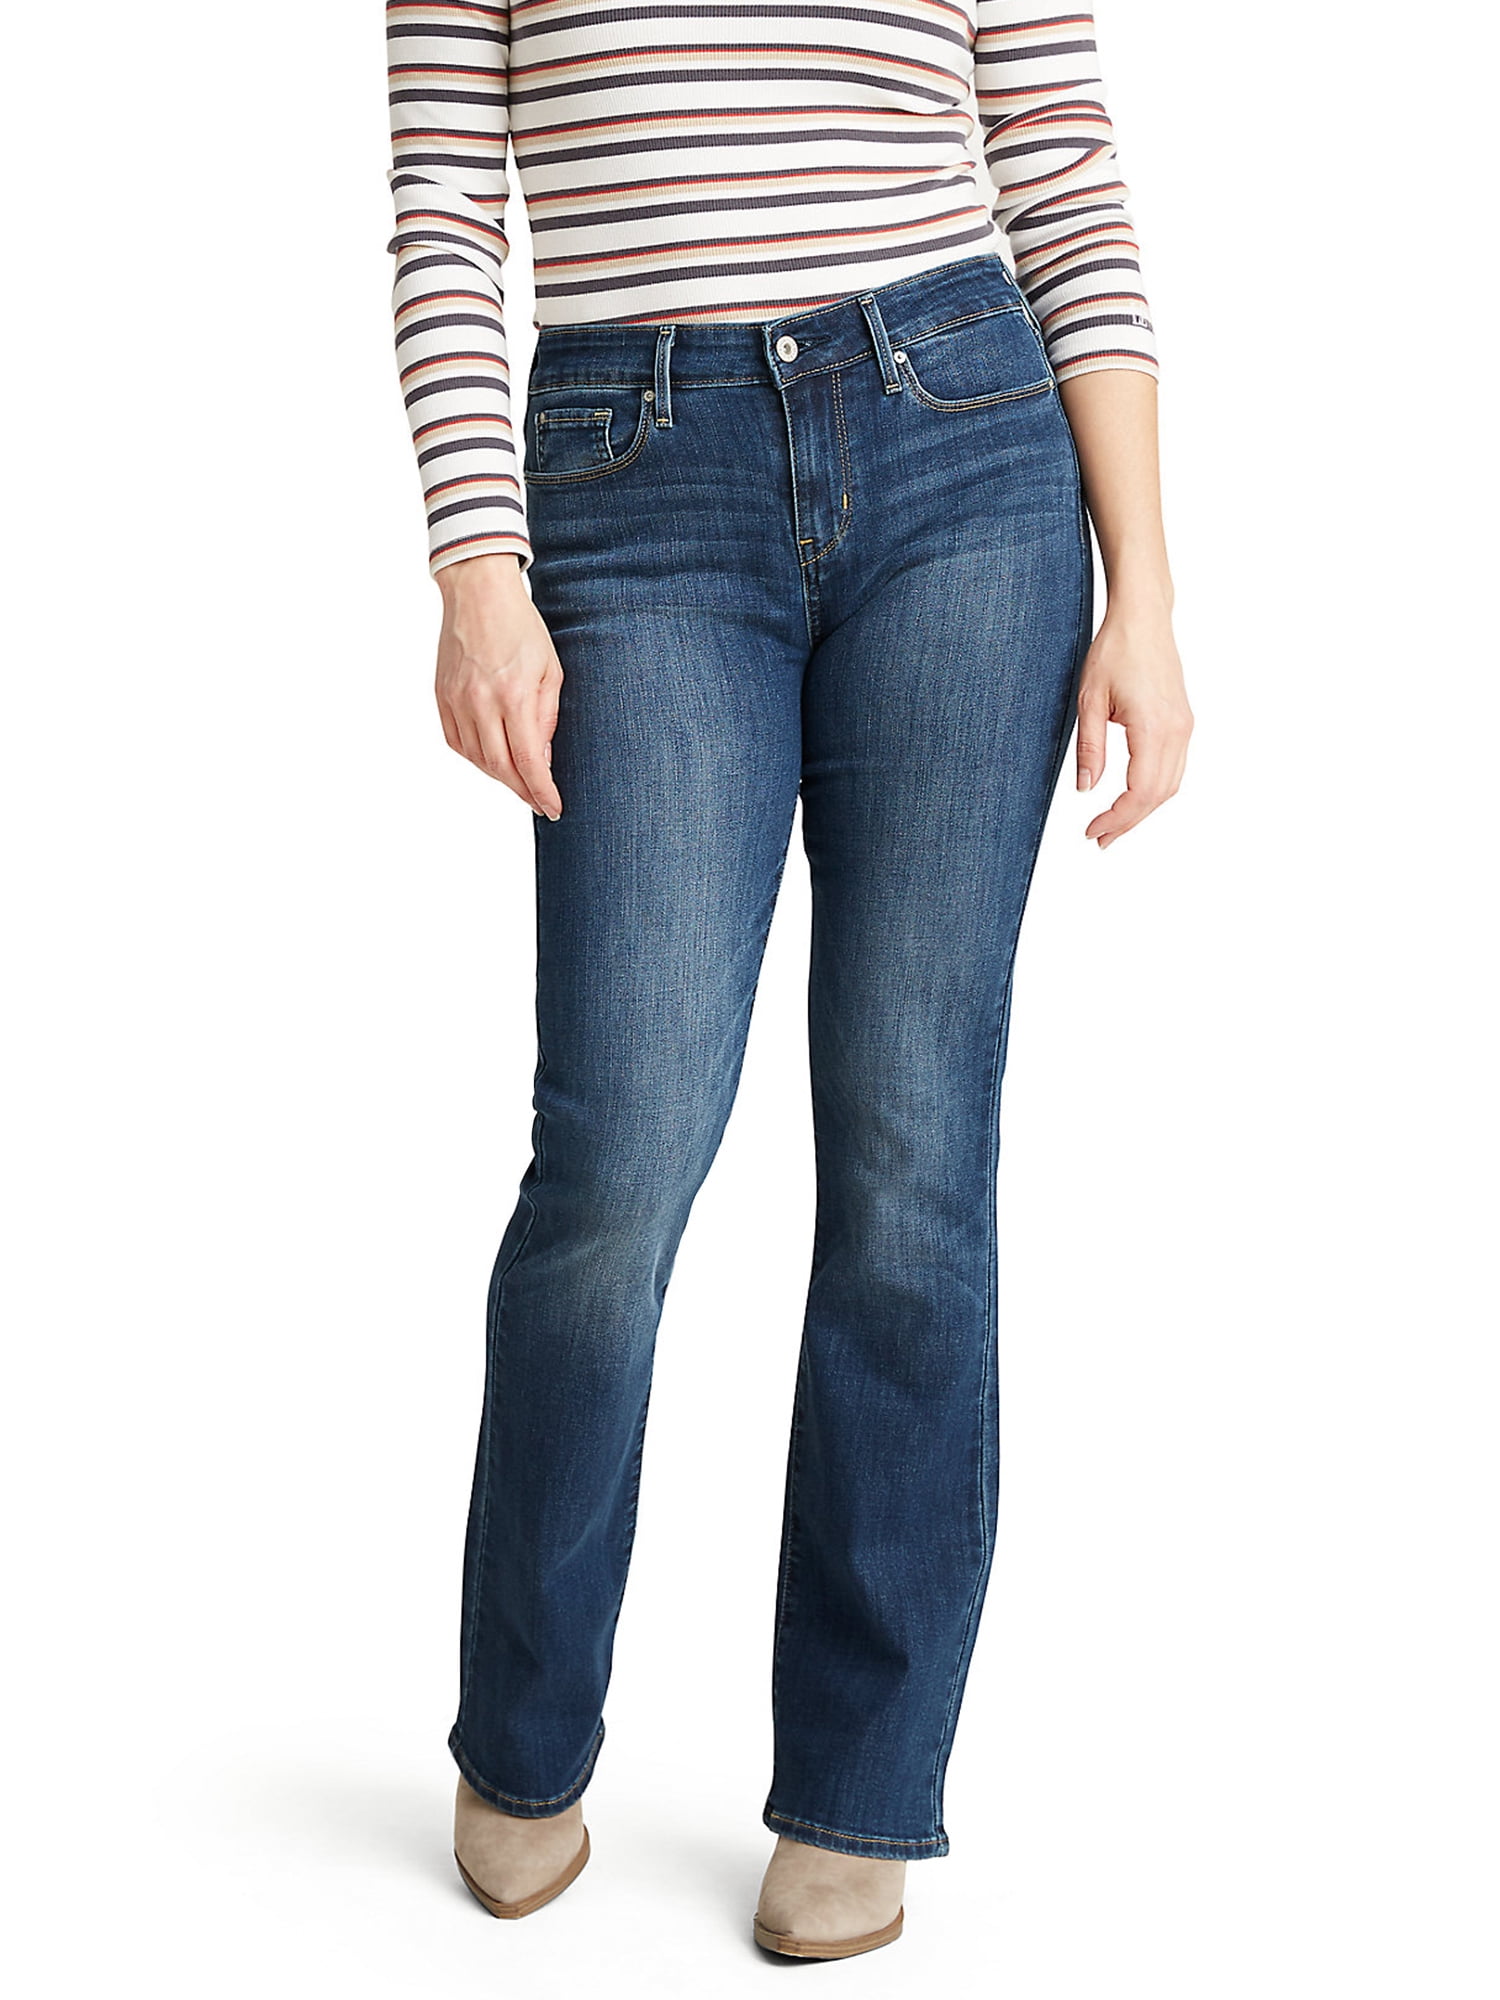 walmart levi women's jeans